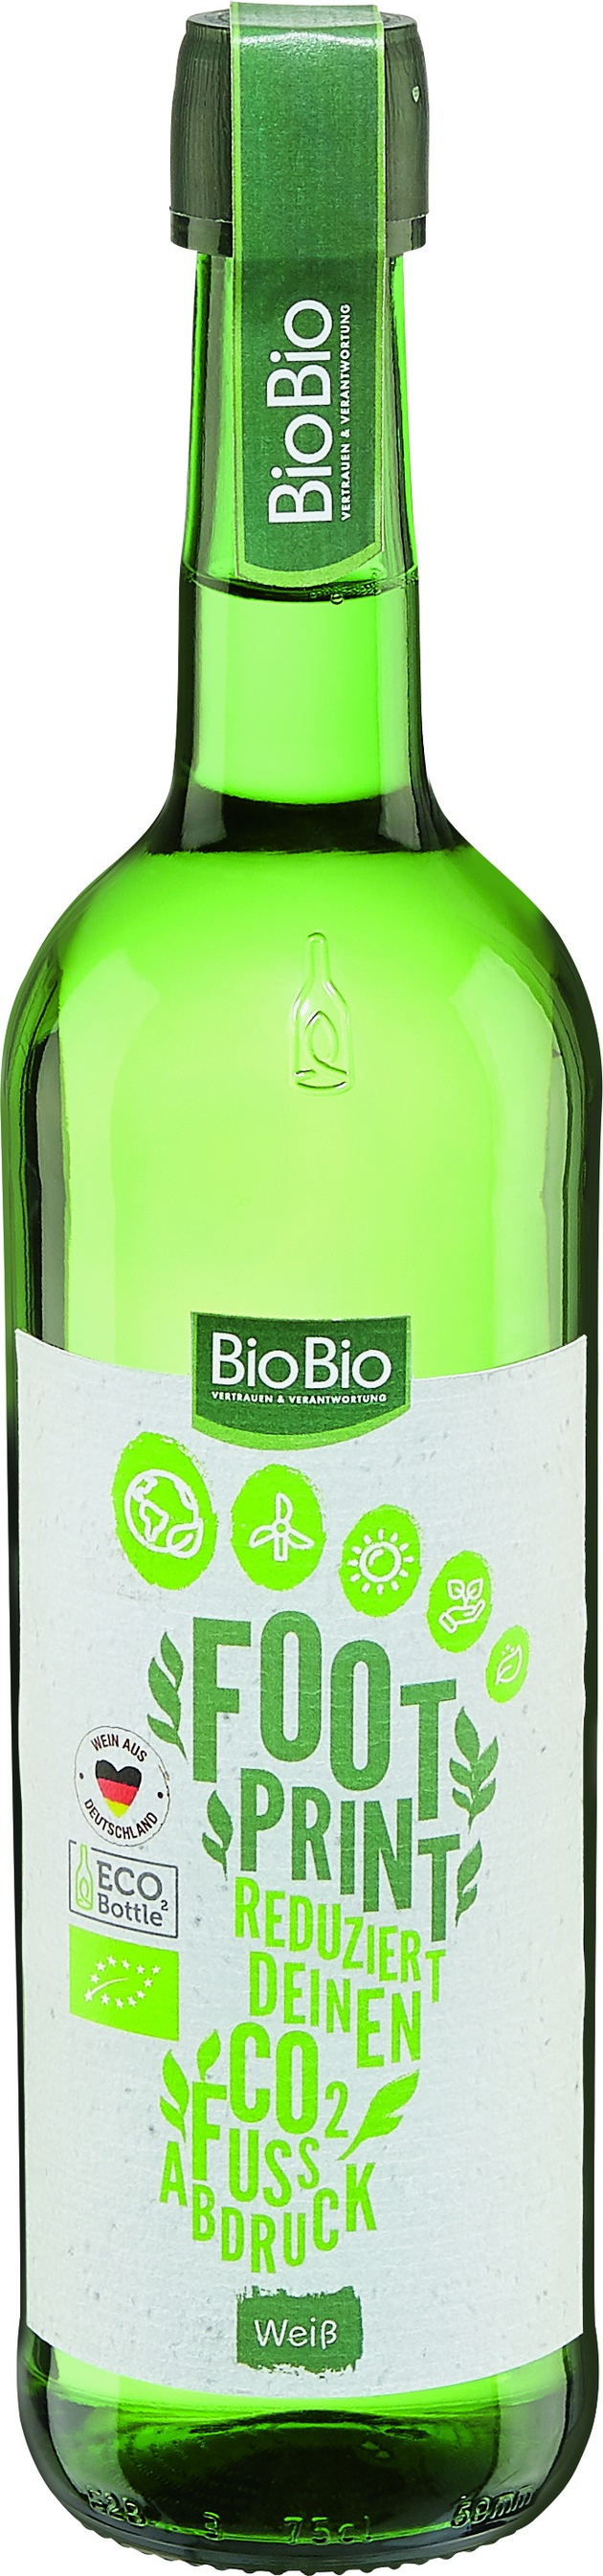 Nachhaltigerer Weingenuss: Weinauswahl in Bio-Qualität bei Netto Marken-Discount